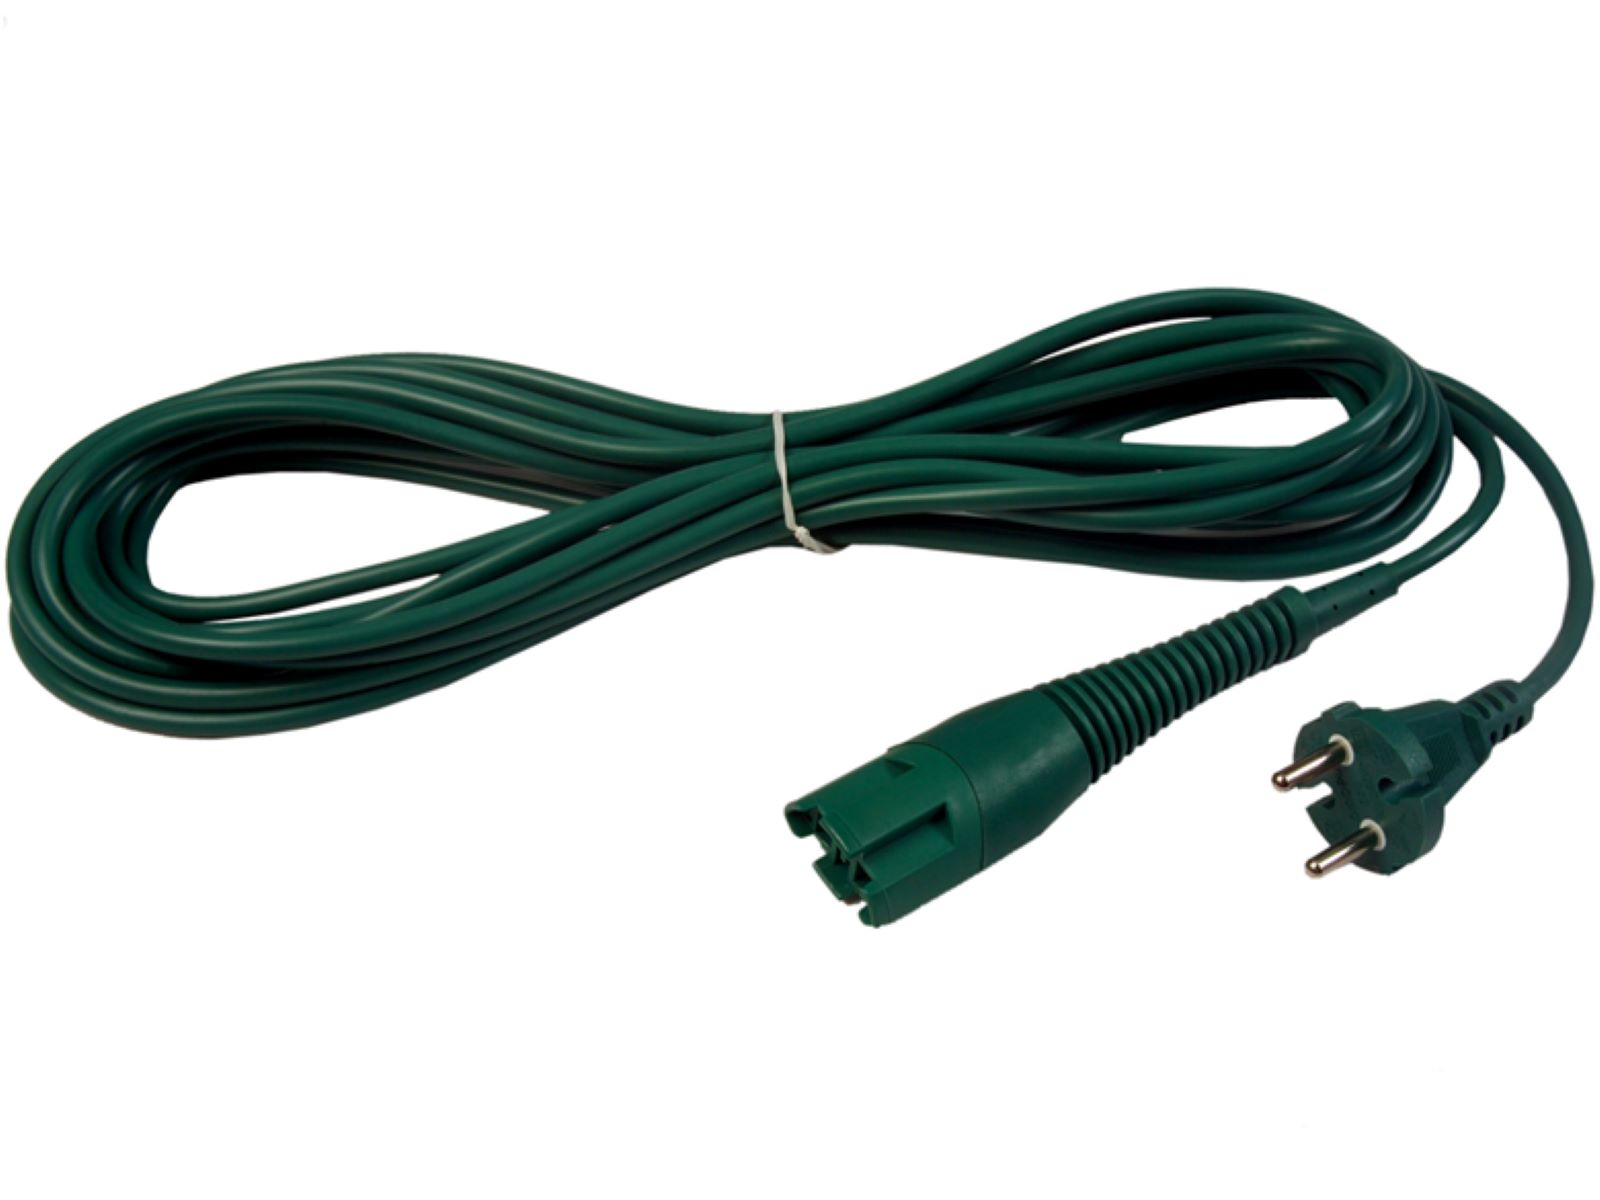 Kabel, Stromkabel, Anschlusskabel kompatibel mit Vorwerk Kobold 130, 131 - 7 Meter